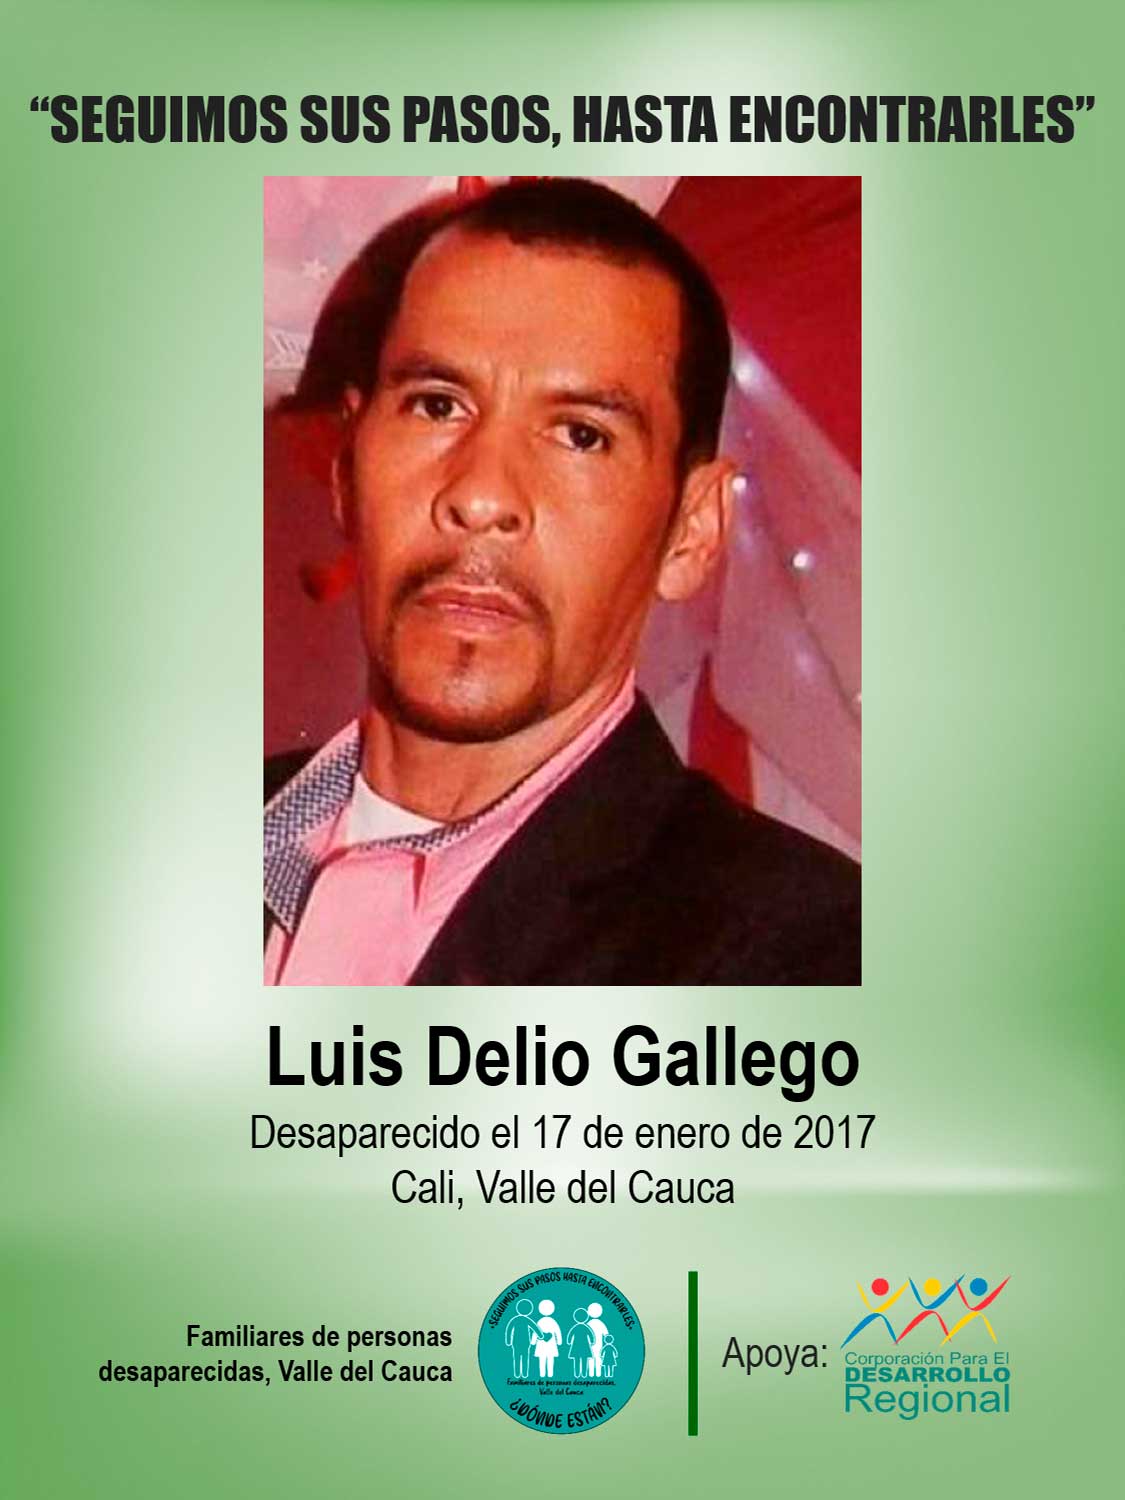 Luis Delio Gallego